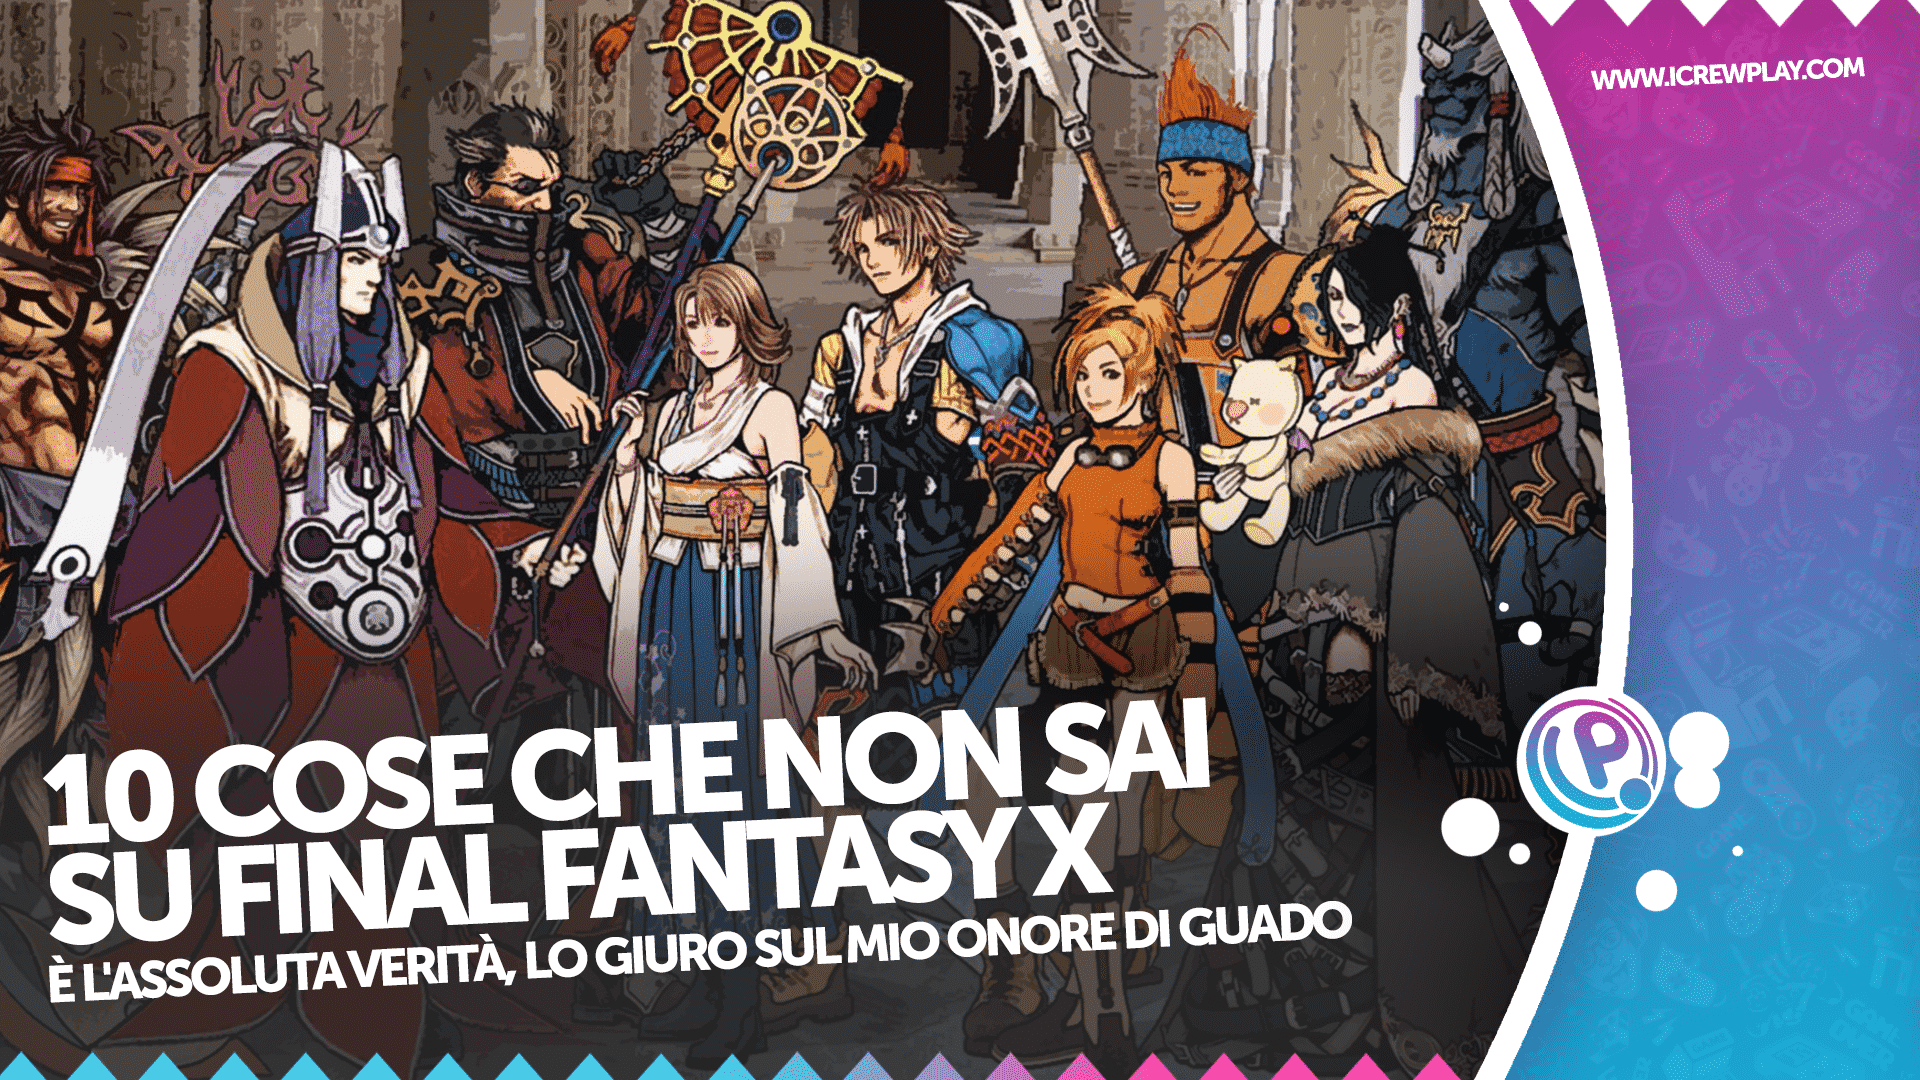 10 cose che non sai su Final Fantasy X 22